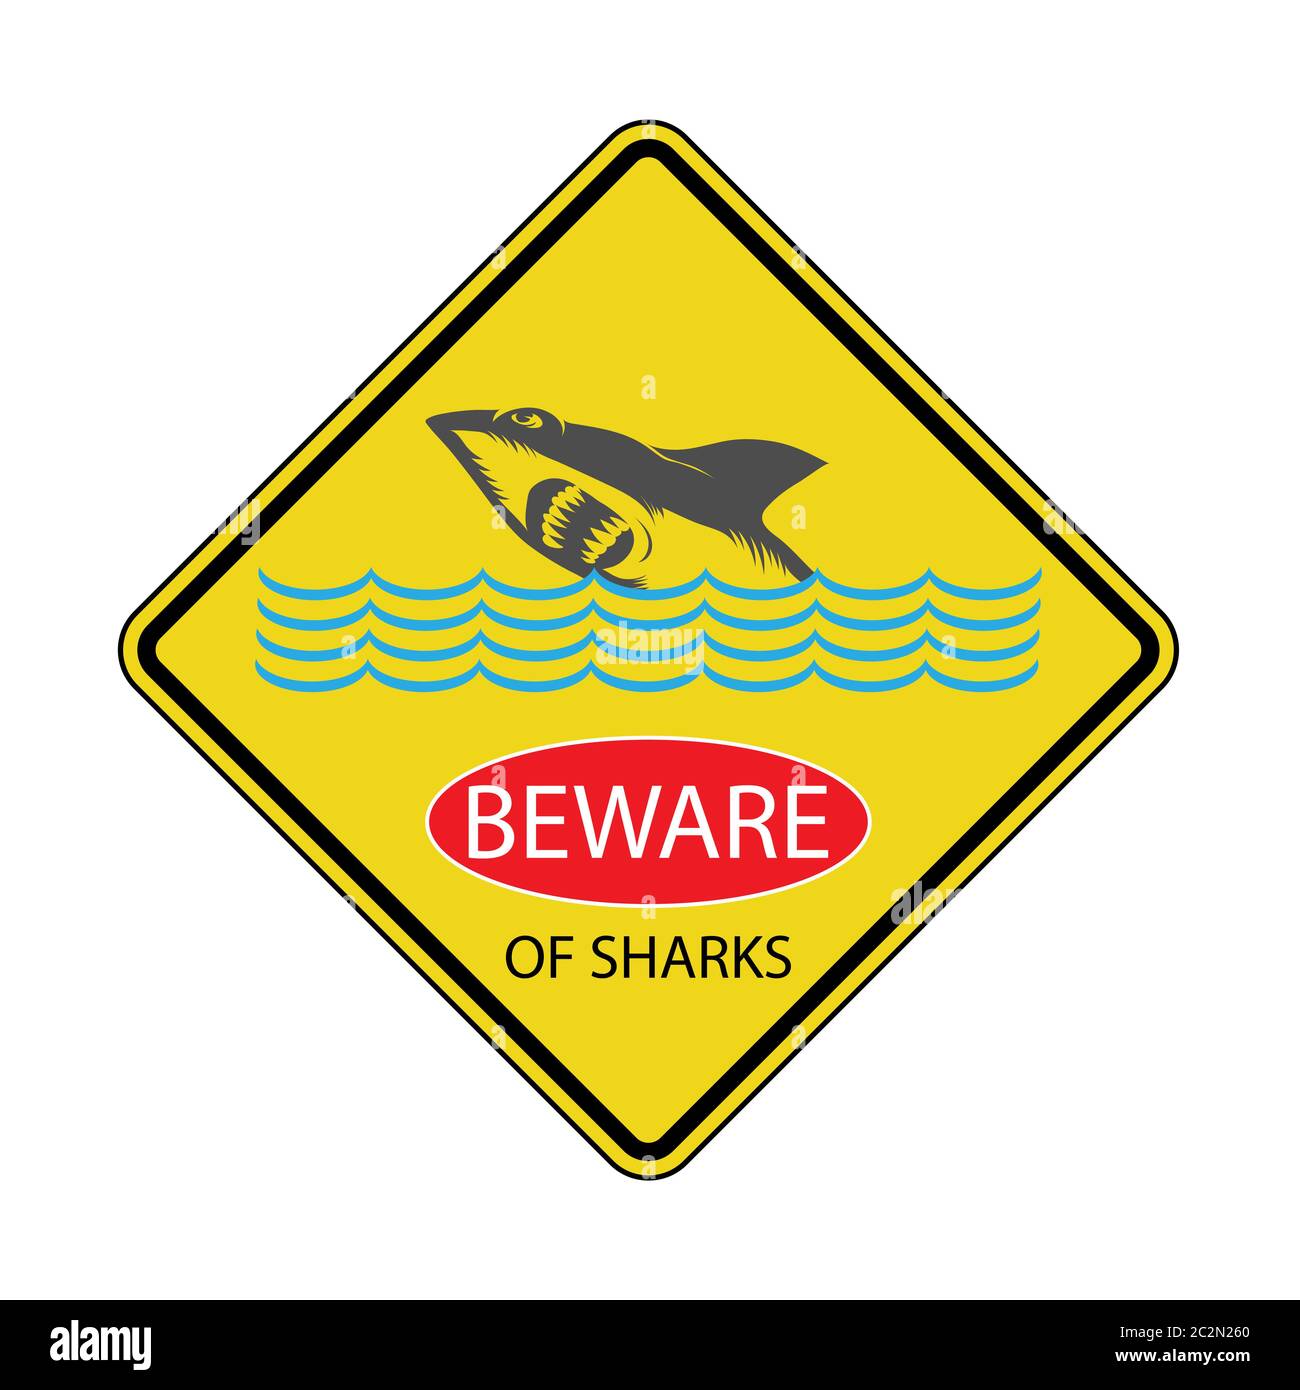 Beware of Ninja Shark!